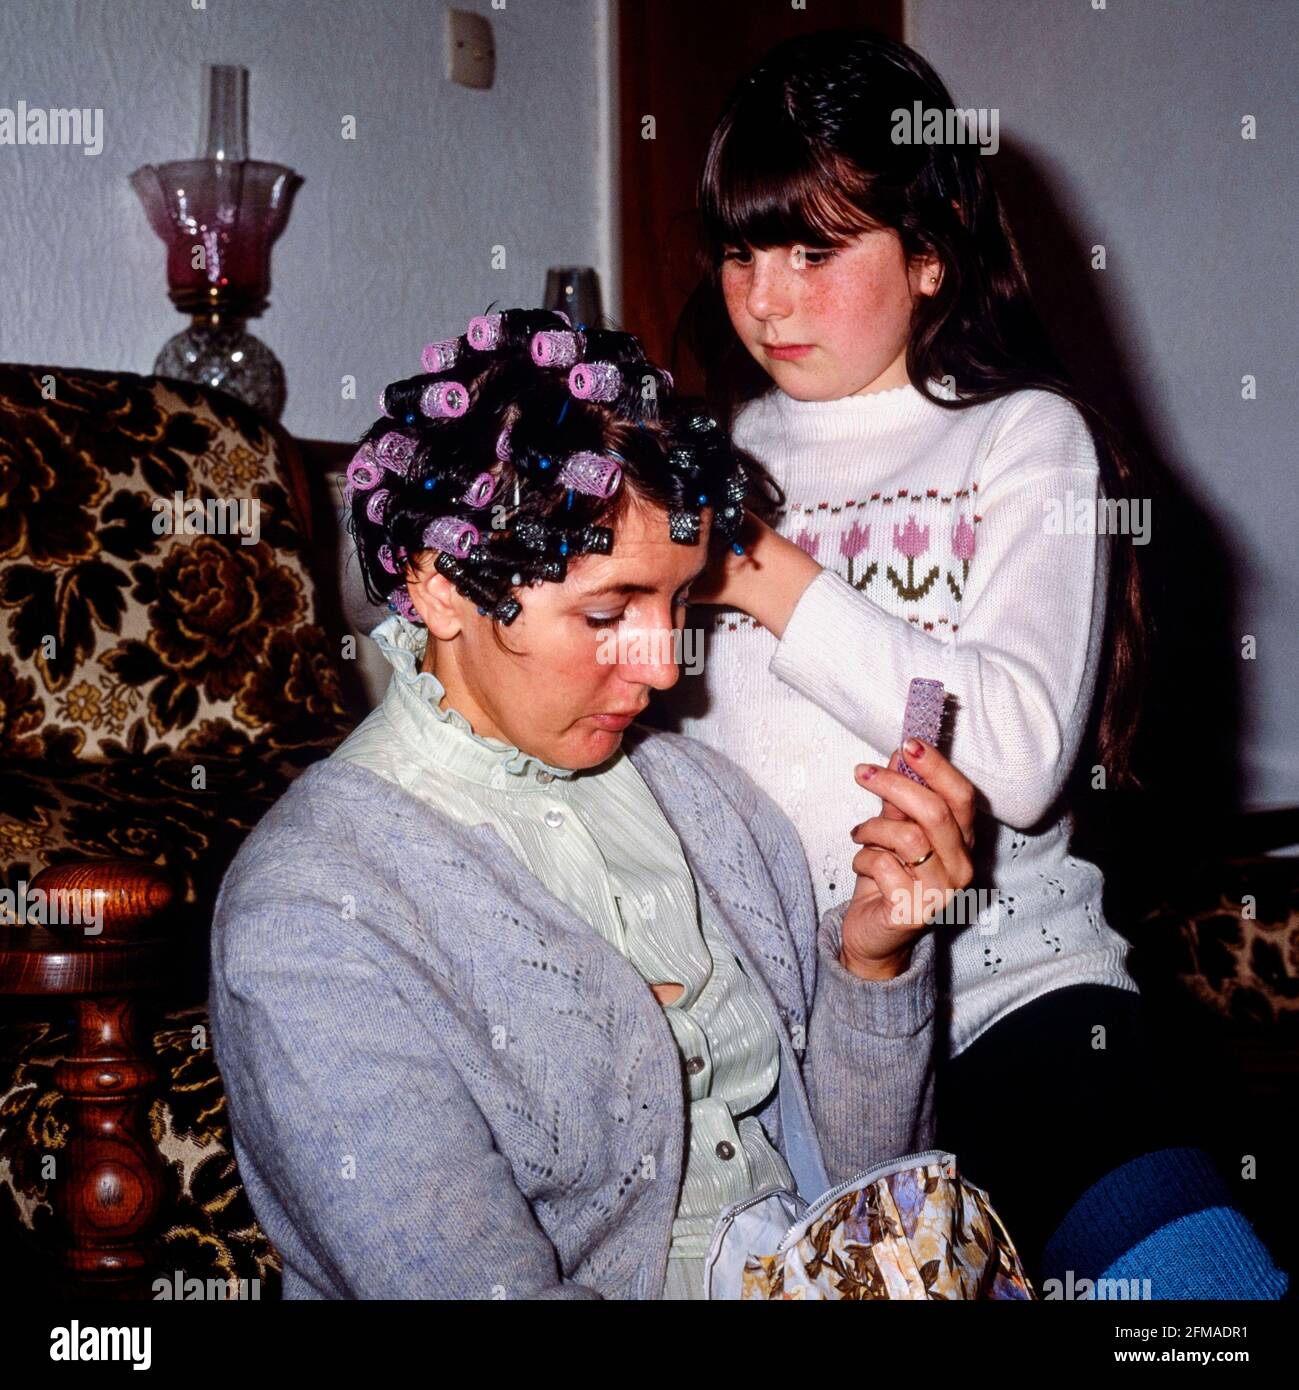 giovane ragazza che mette i rulli nei suoi capelli delle madri a casa 1980 inghilterra regno unito Foto Stock